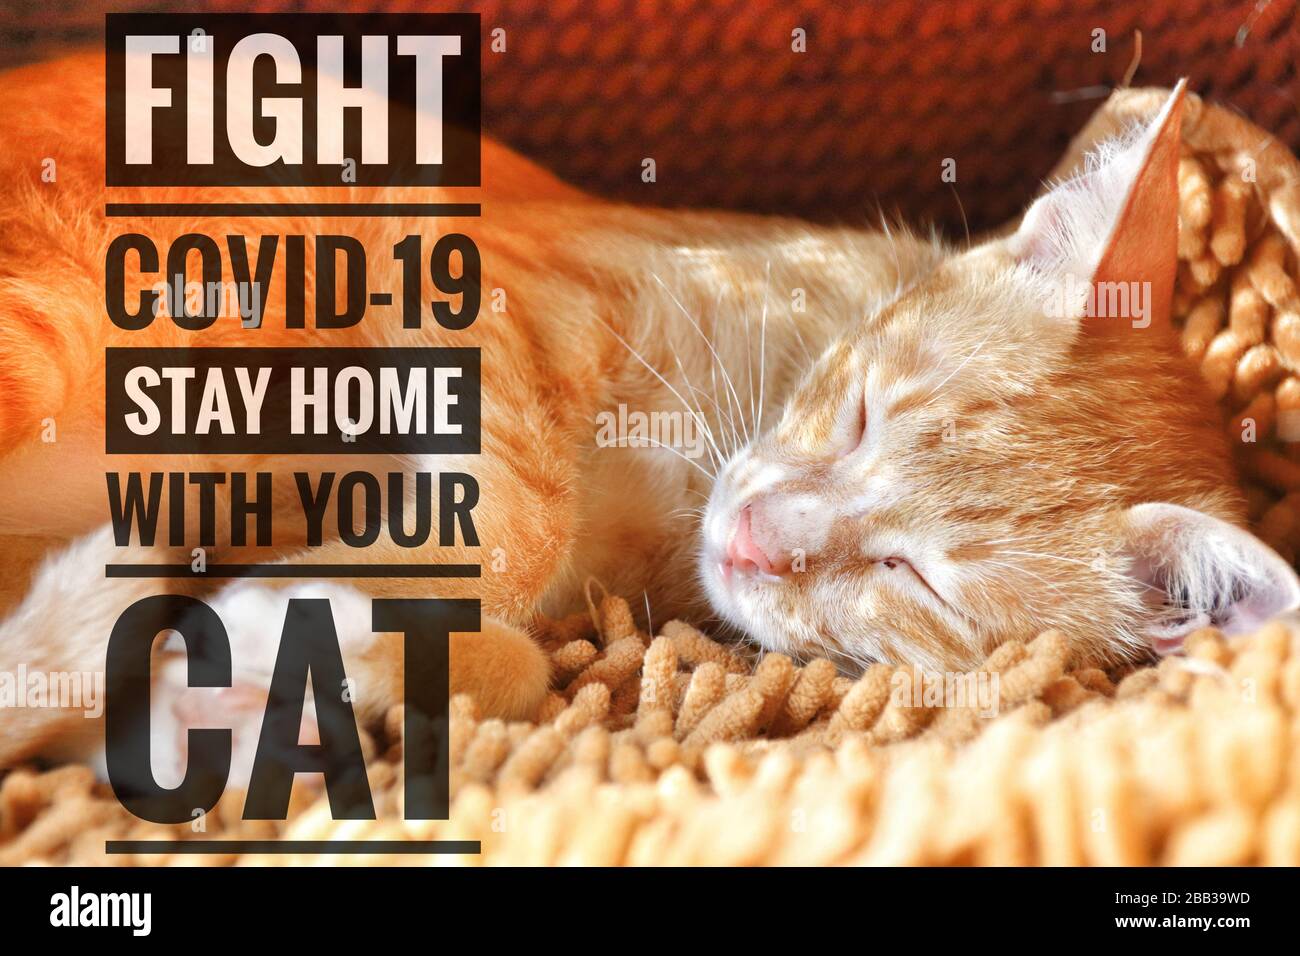 Bezaubernde Tierkatze und eine Botschaft, mit Ihrer Katze zu Hause zu bleiben und vor dem Kovid-19-Ausbruch sicher zu bleiben Stockfoto